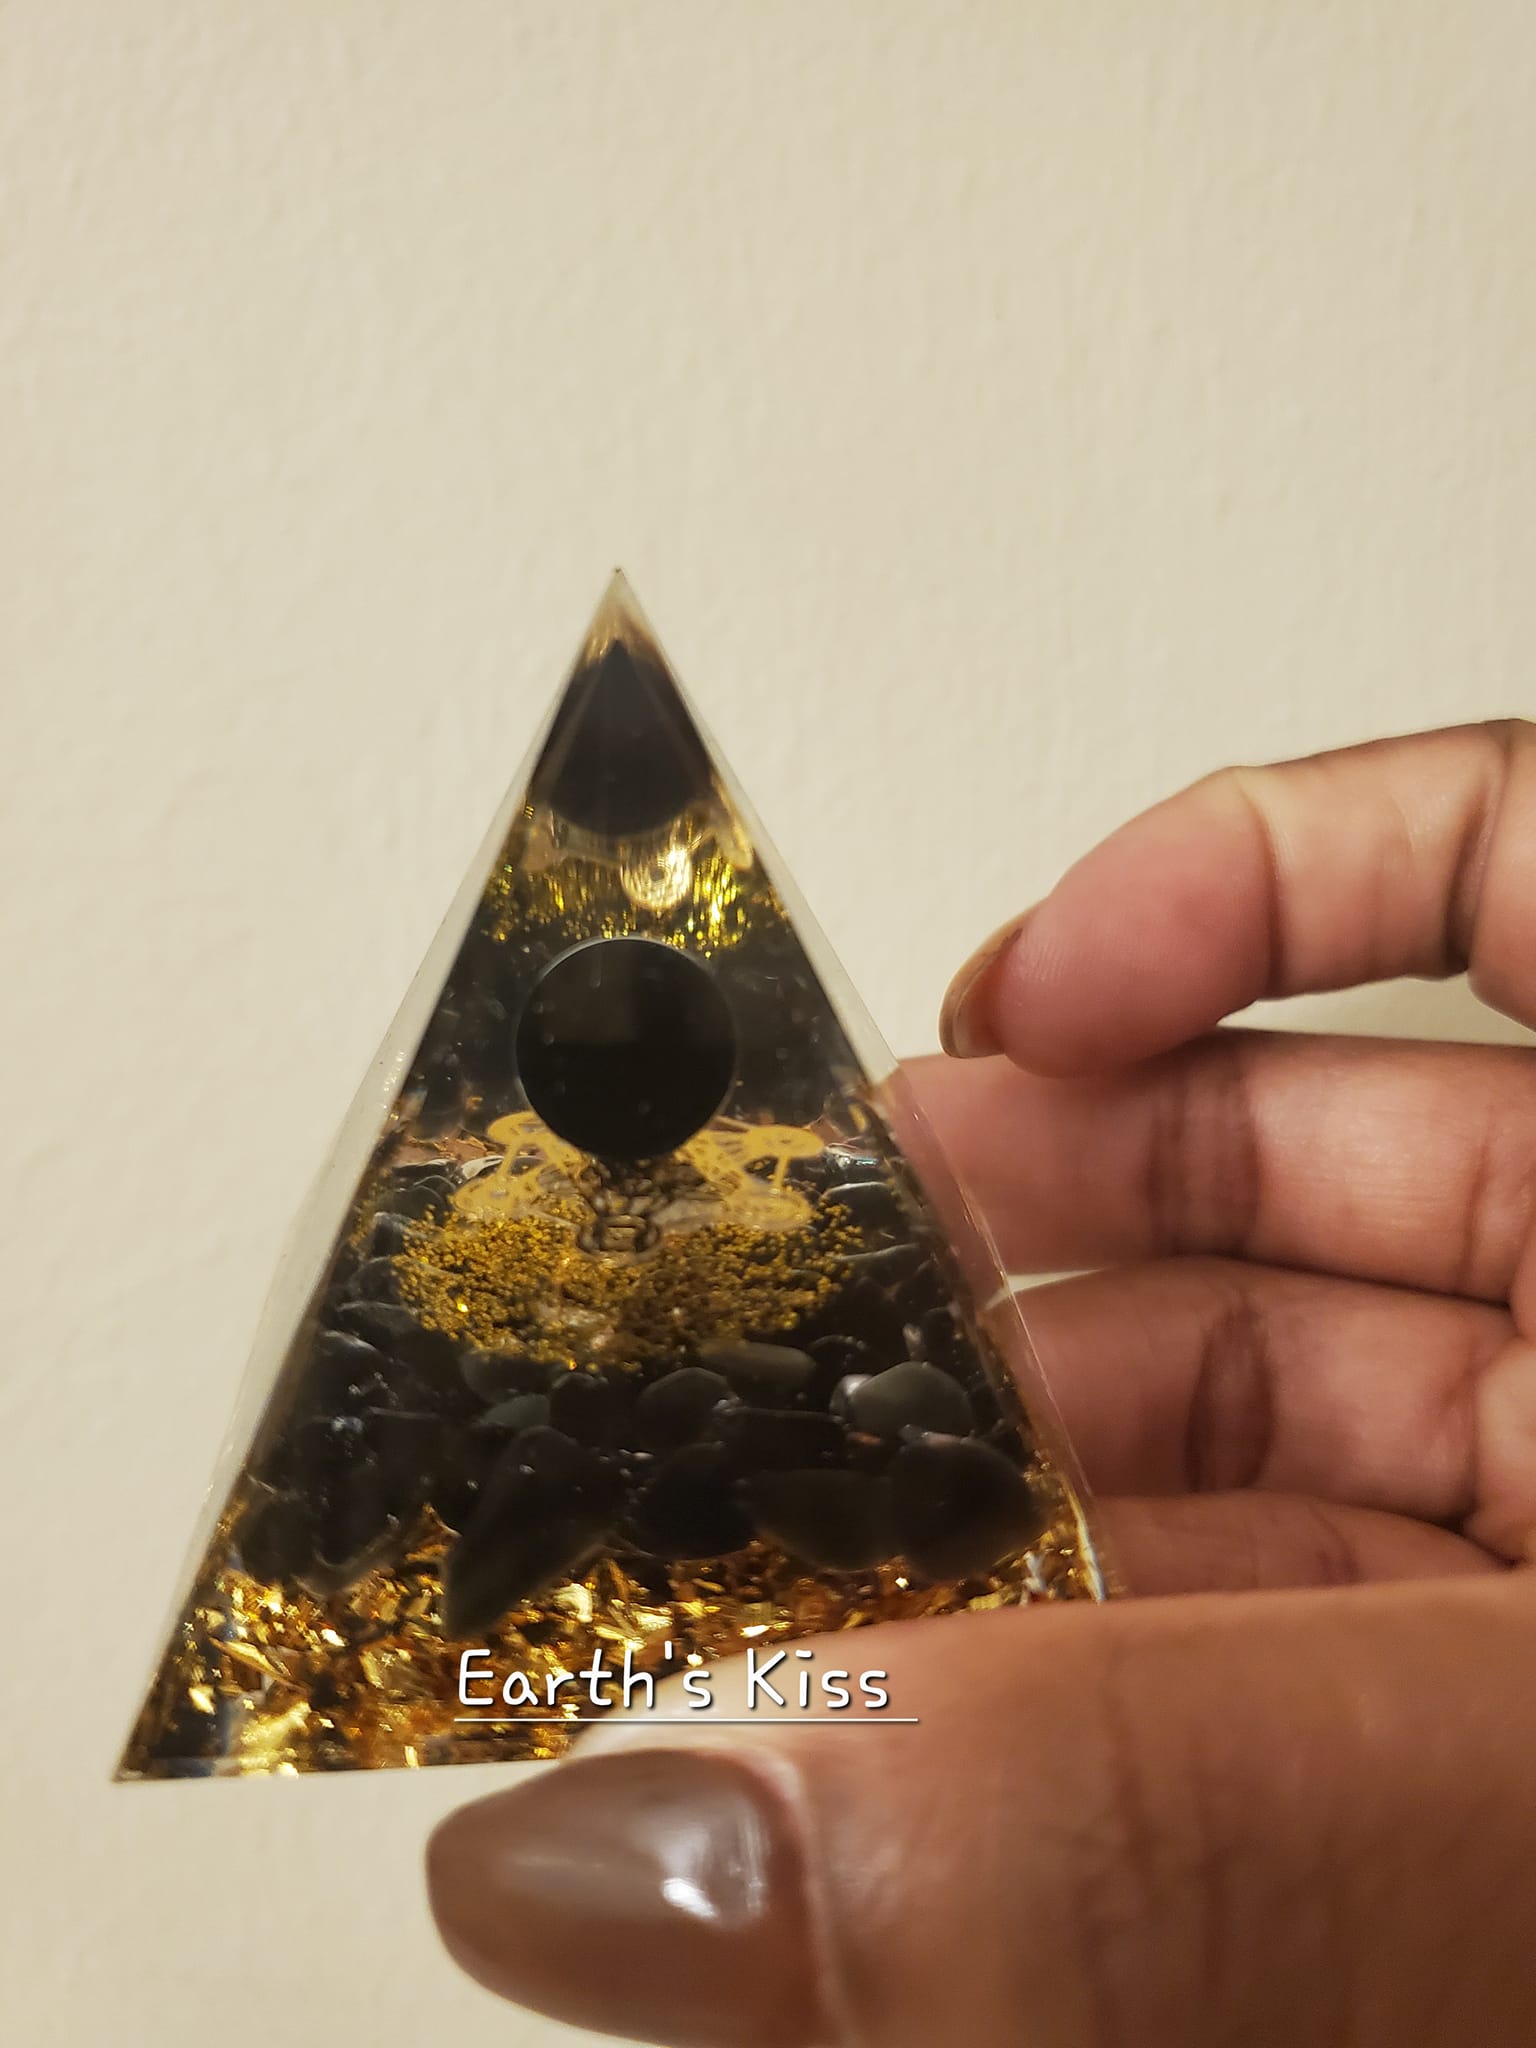 Black obsidian pyramid